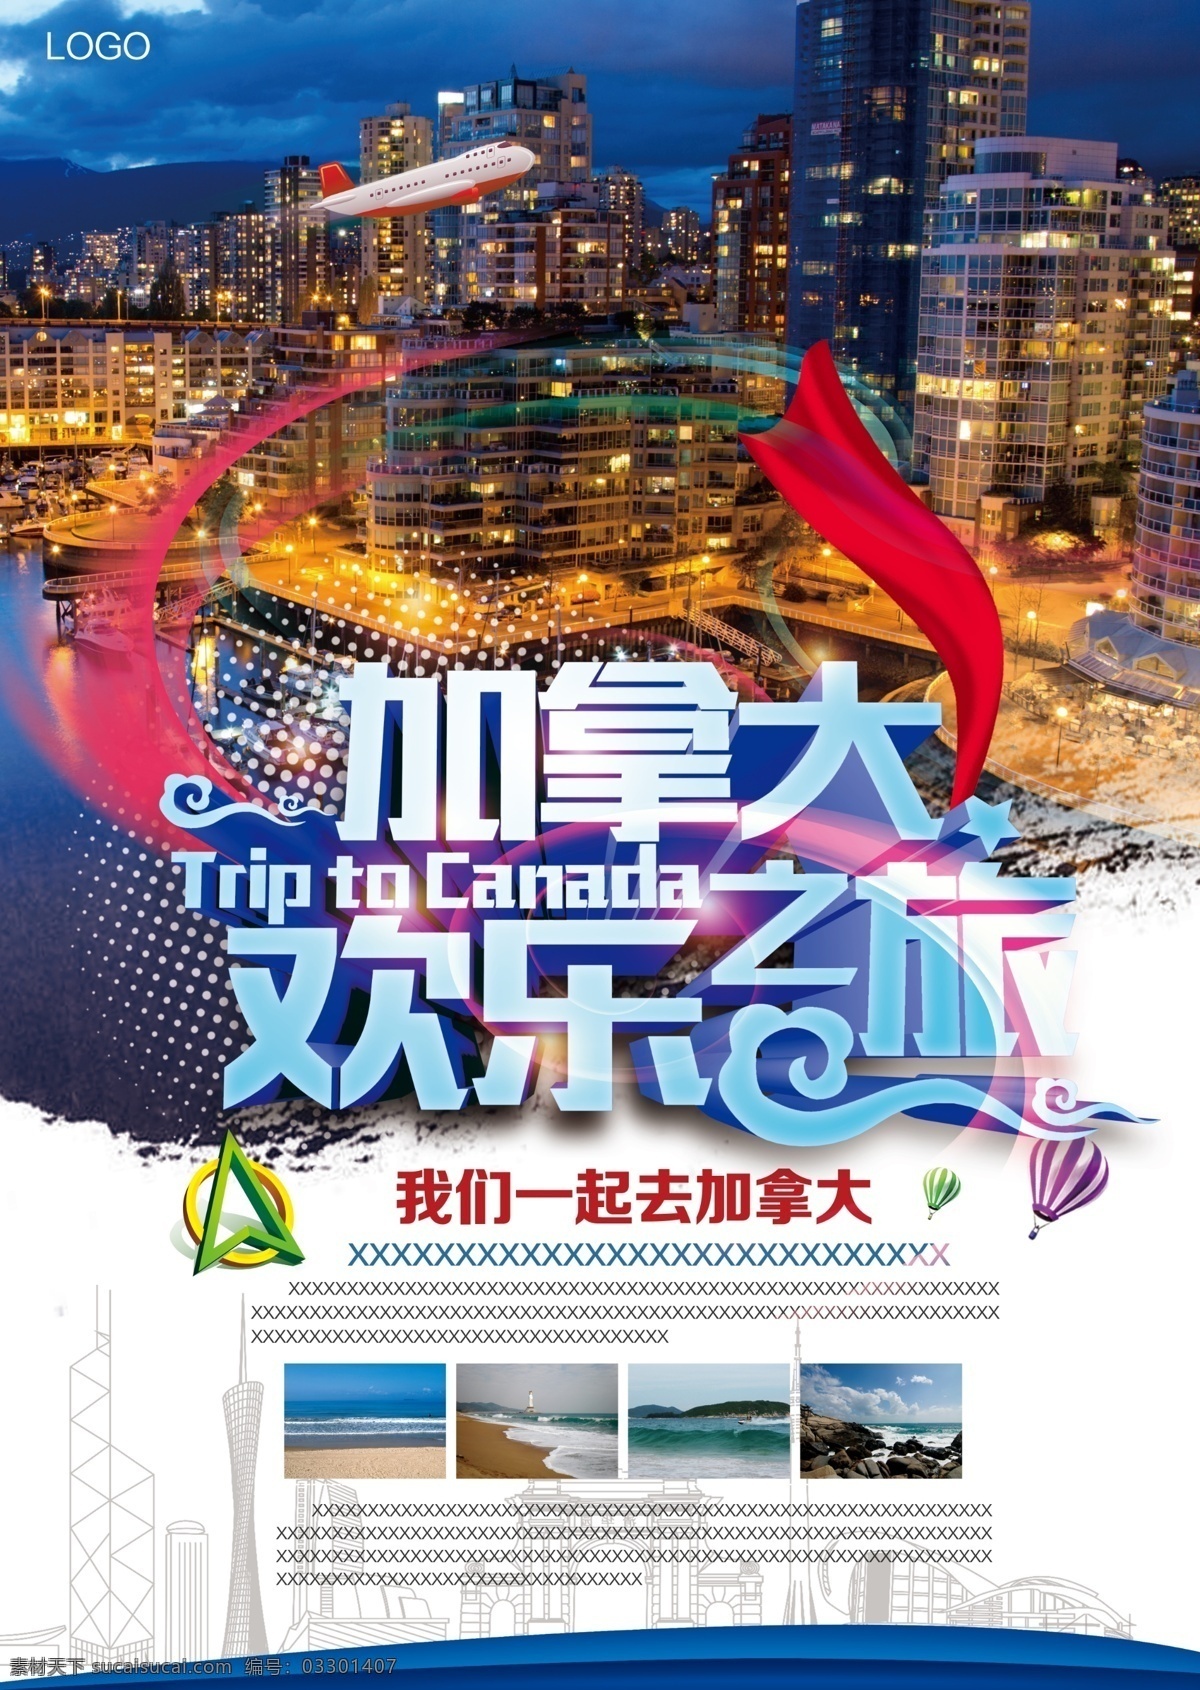 加拿大 欢乐 之旅 宣传海报 分层 旅游海报 旅游广告 绿色展板 城市夜景 飞机 我们一起去